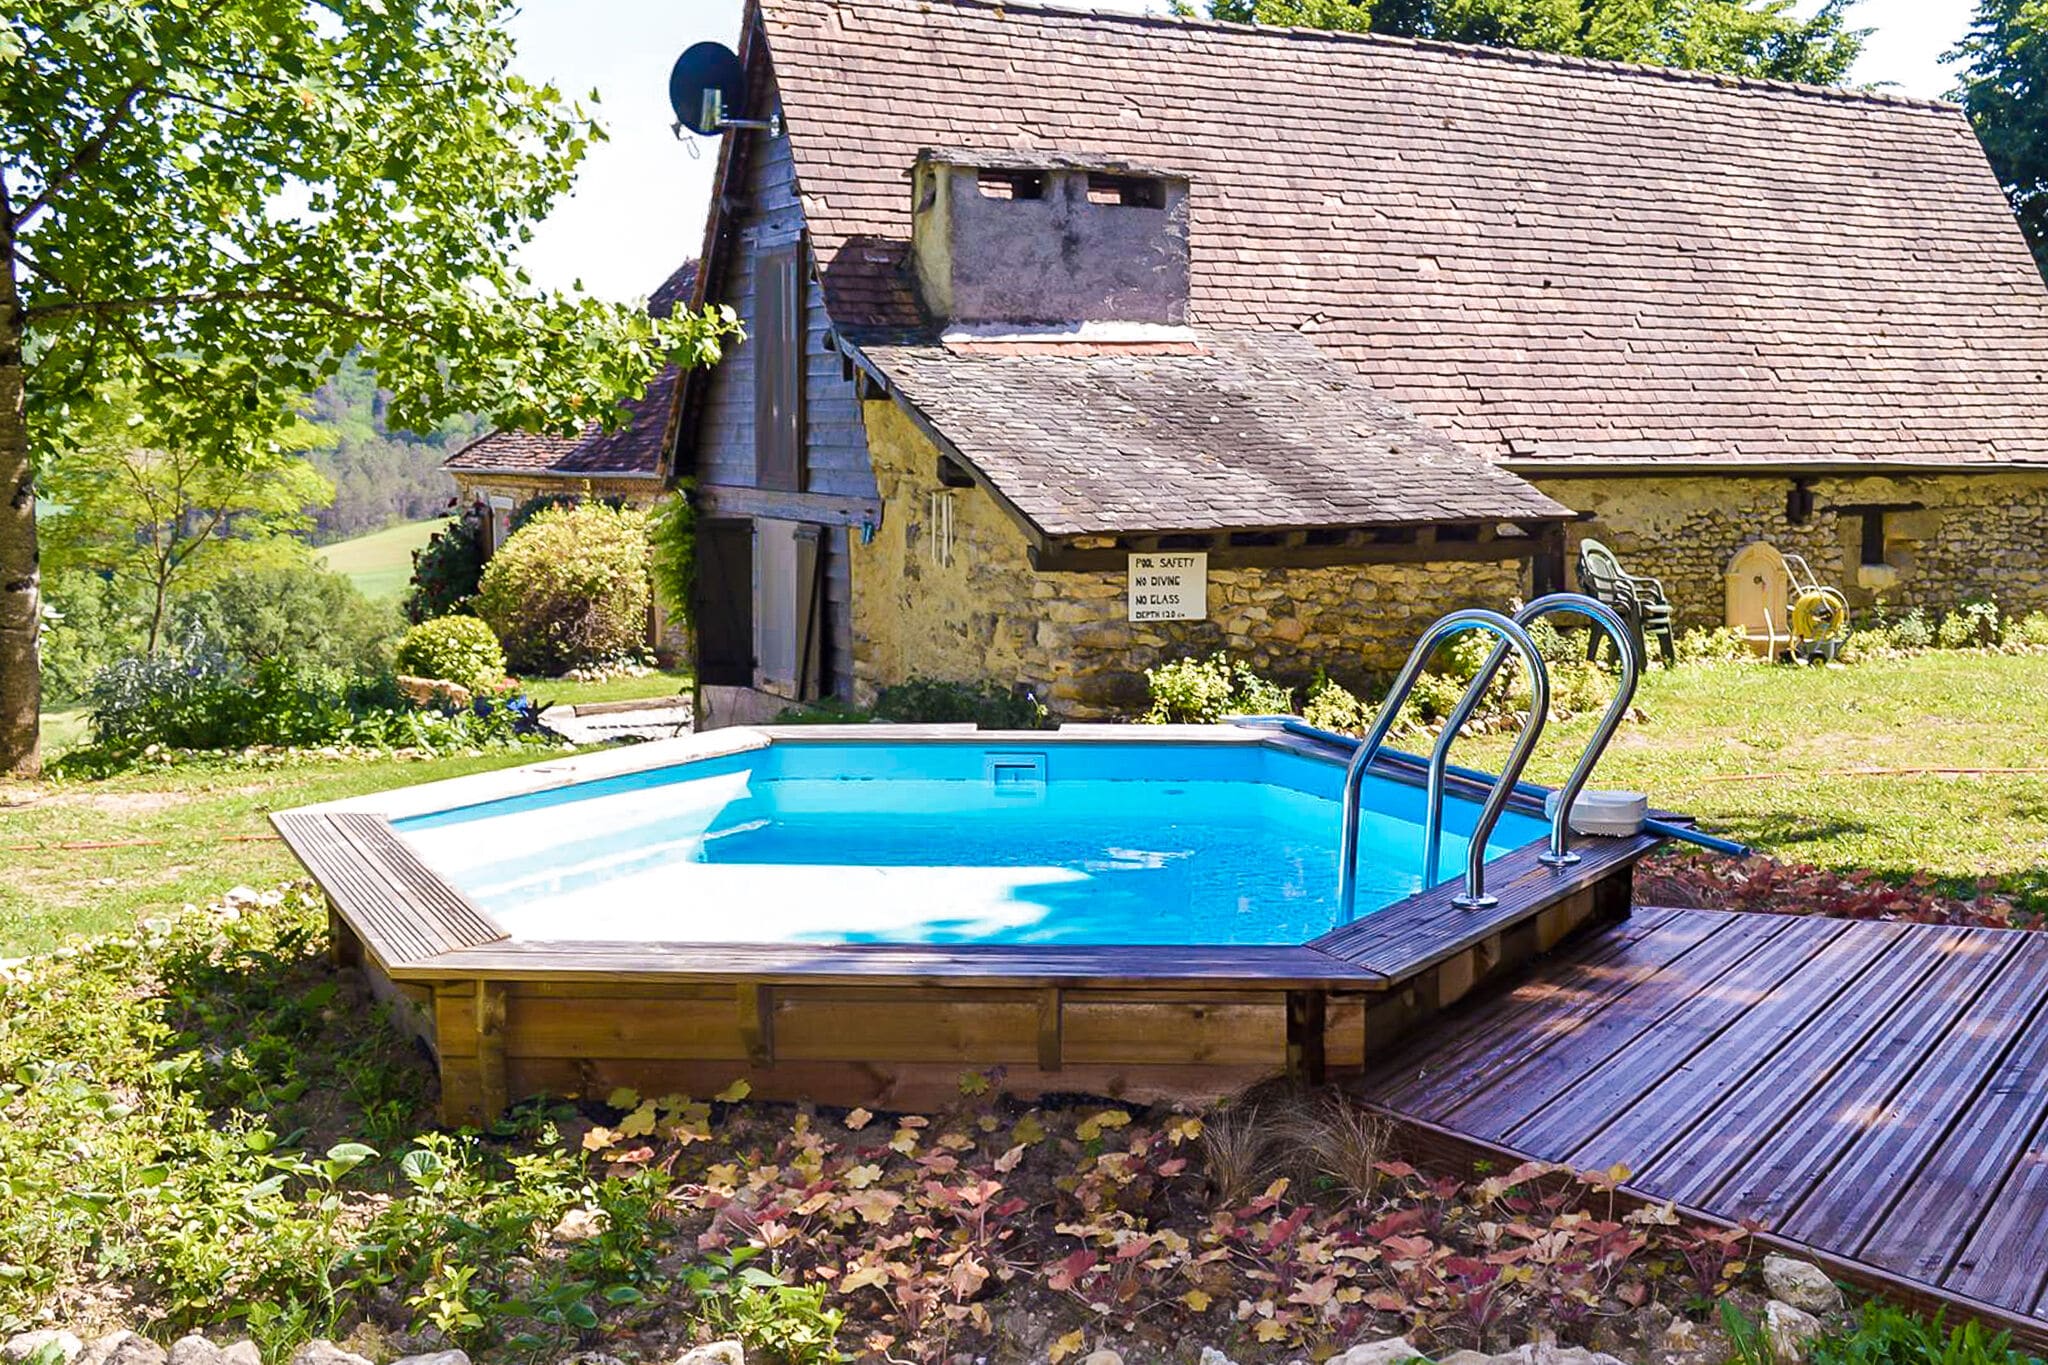 Knusse cottage met zwembad, grote tuin, speeltuintje en mooi uitzicht.